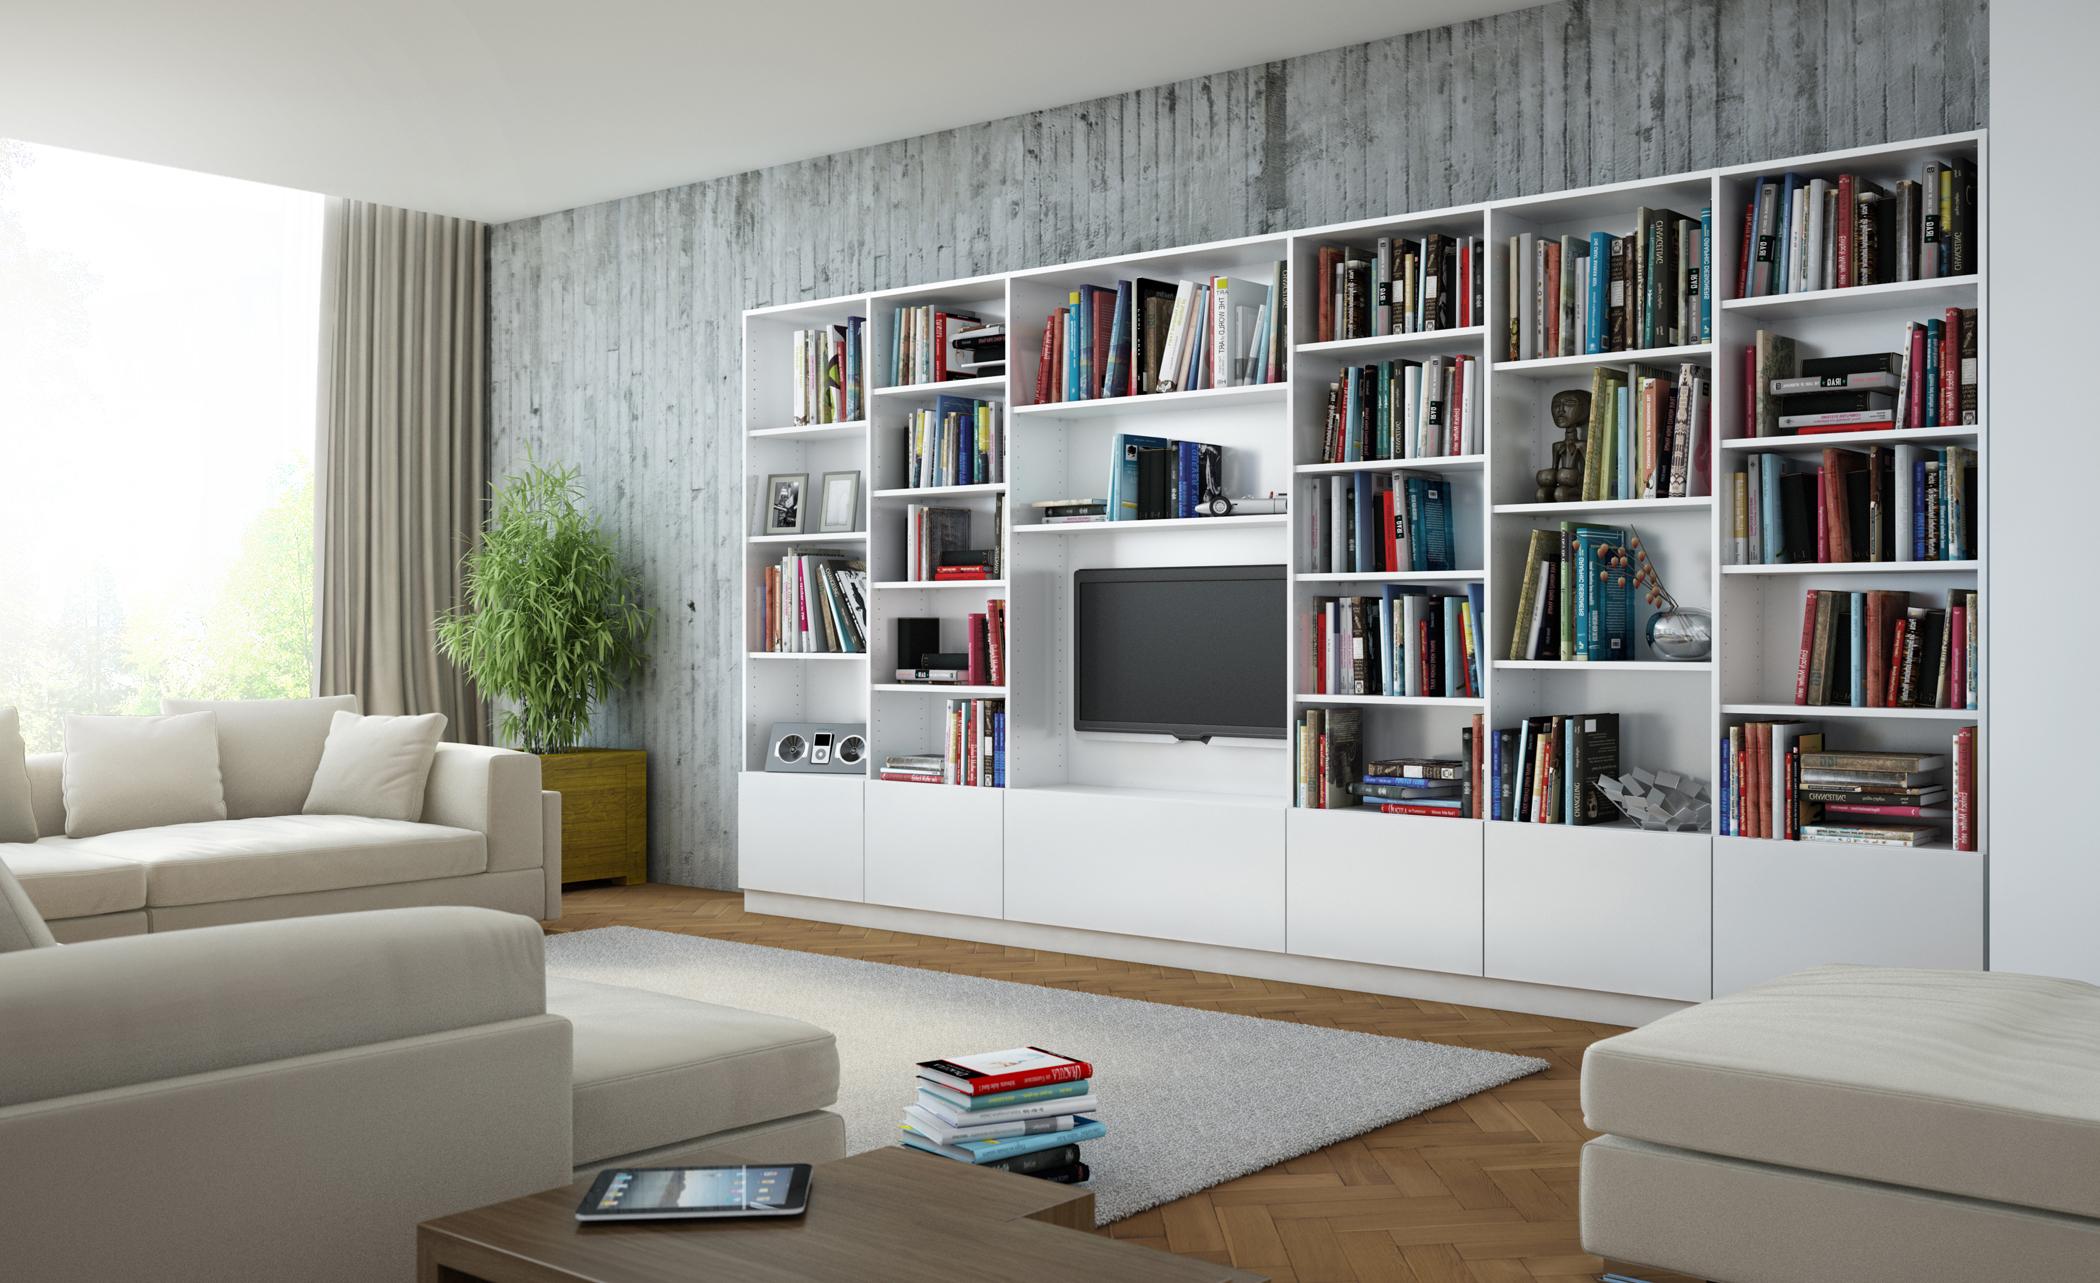 Bücherregal multifunktional einsetzen #bücherregal #teppich #sofa ©Meine Möbelmanufaktur